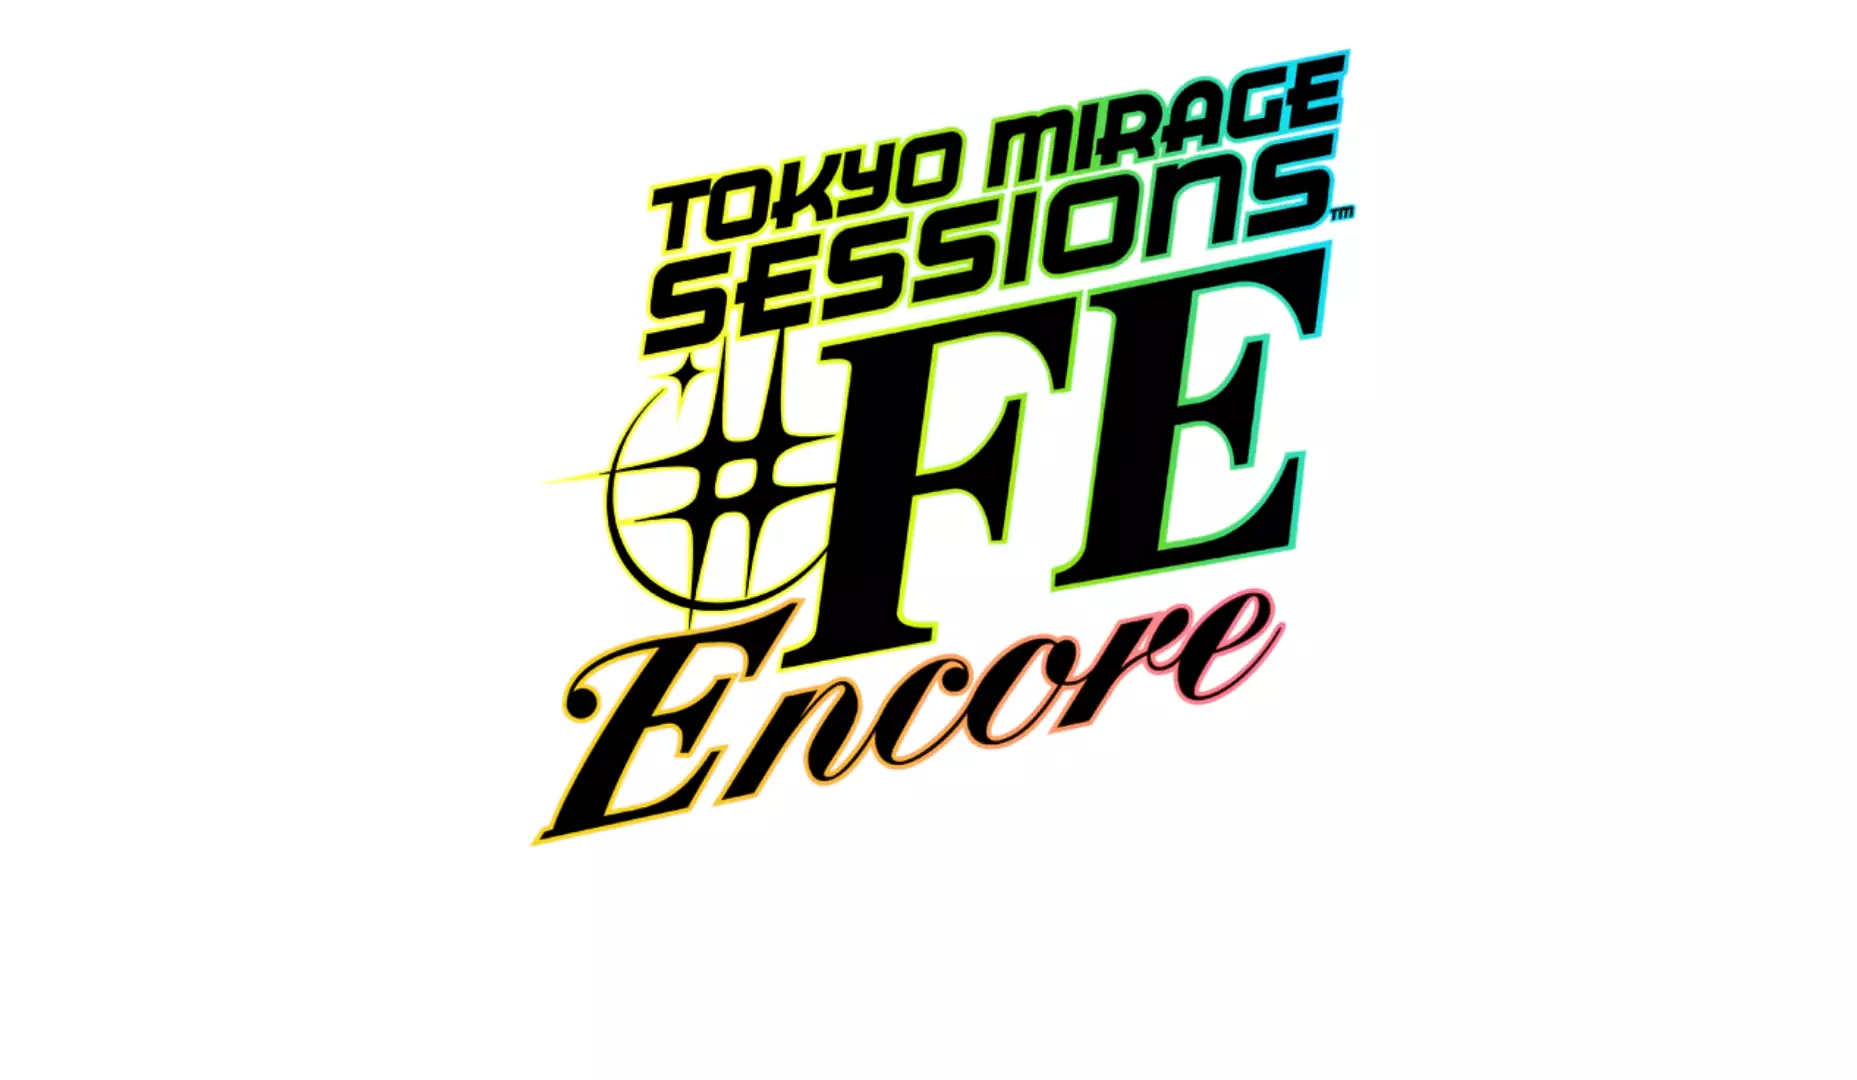 Tokyo Mirage Sessions #FE - ролевая видеоигра 2015 года, разработанная Atlus и опубликованная Nintendo для домашней консоли Wii U.